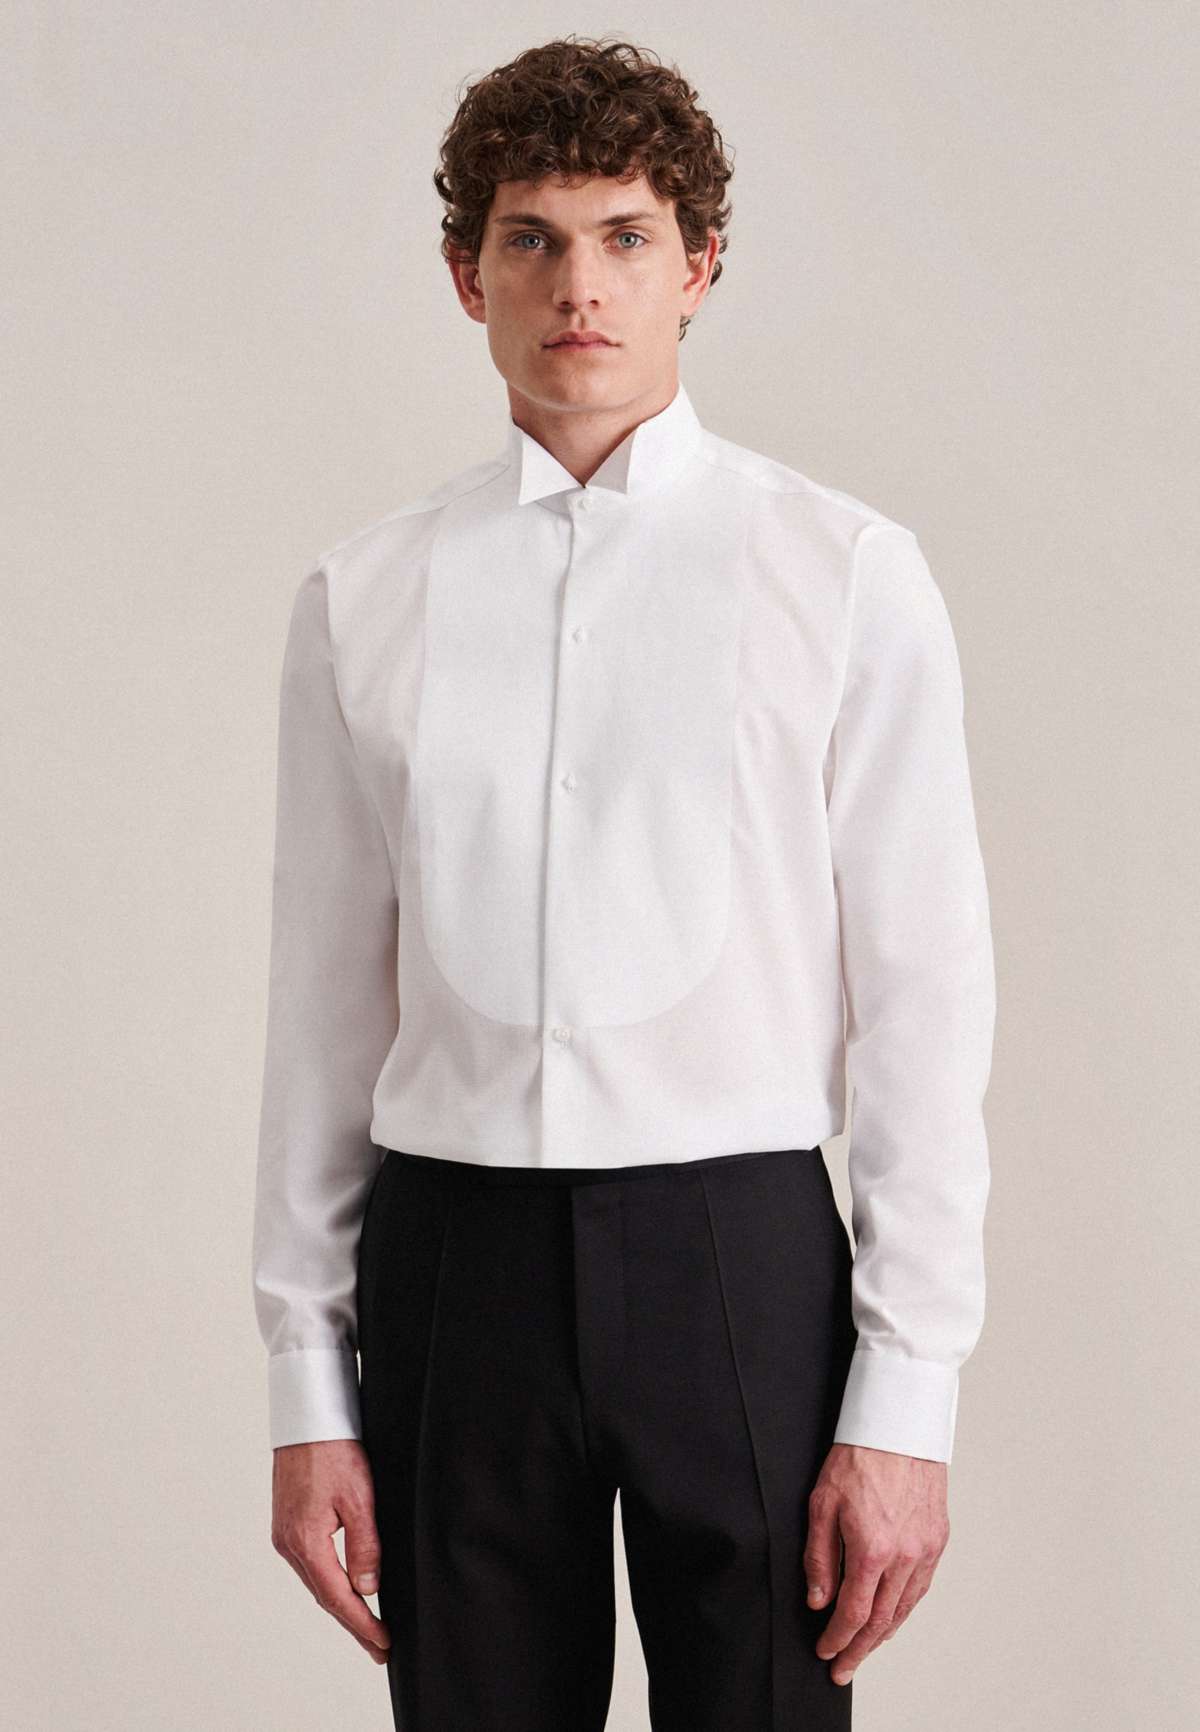 Рубашка под смокинг, стандартная, с удлиненными рукавами, воротник с клапаном, однотонная